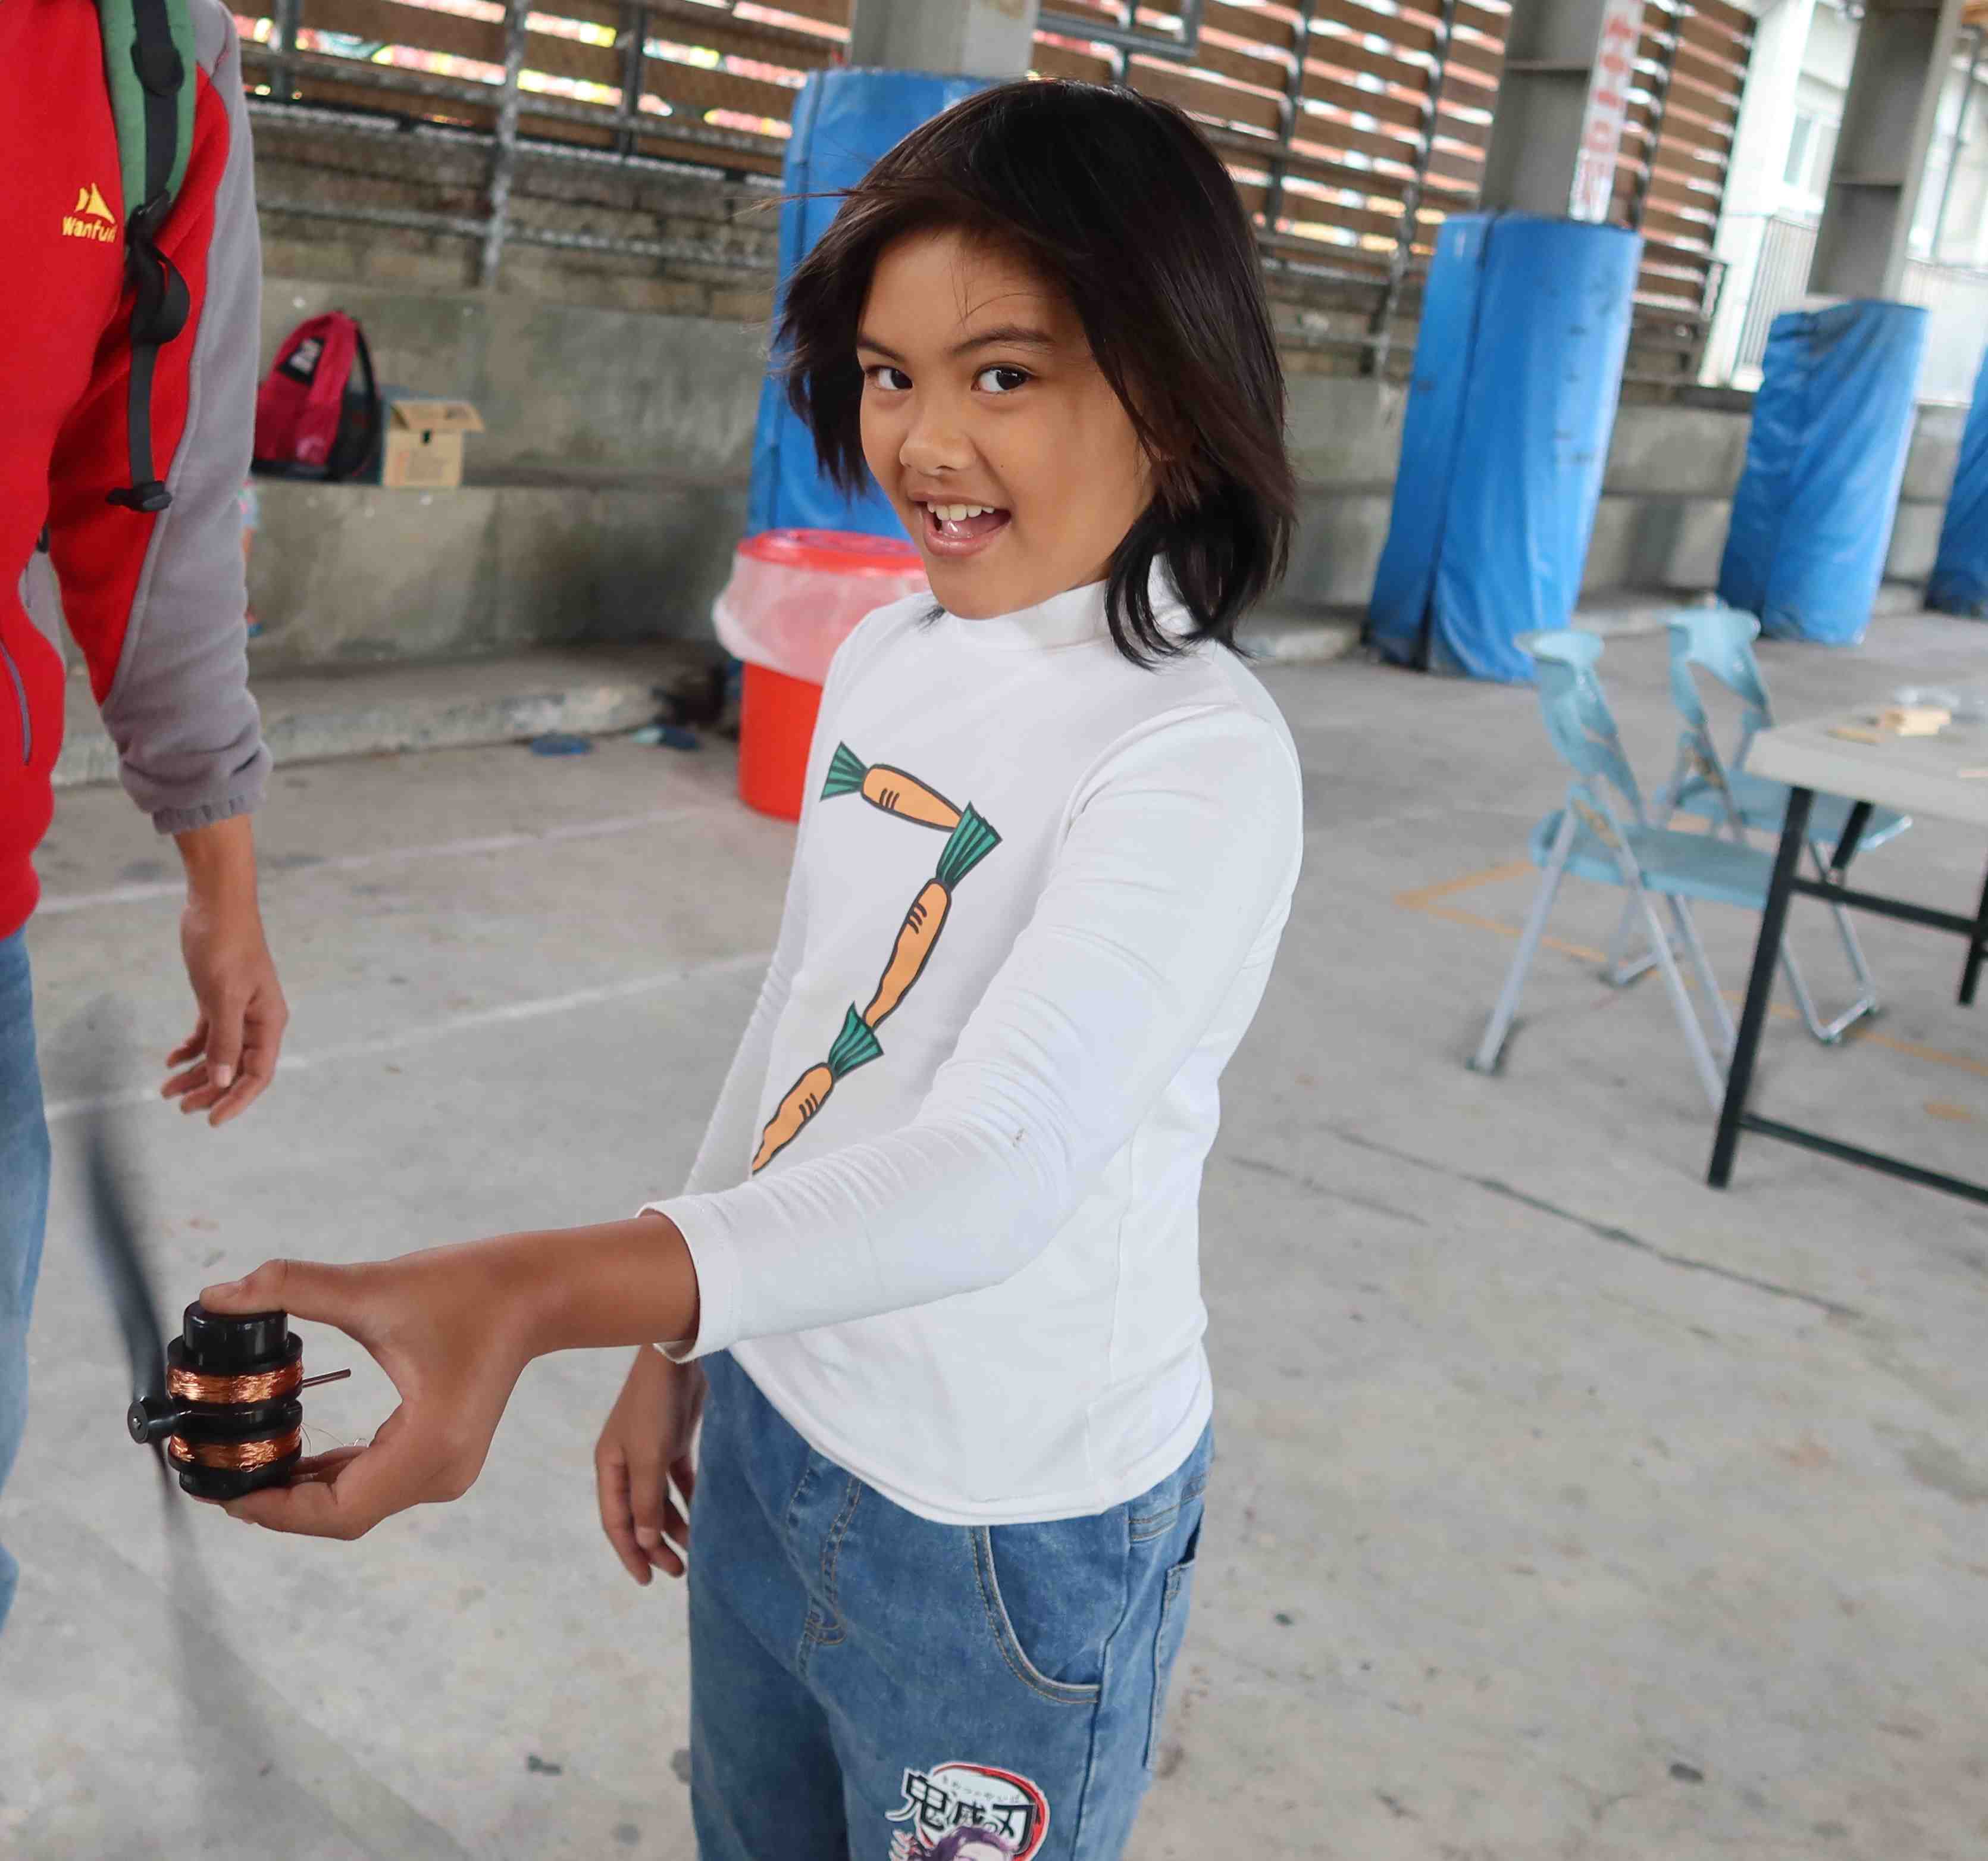 布農族女童測試自製風力發電機